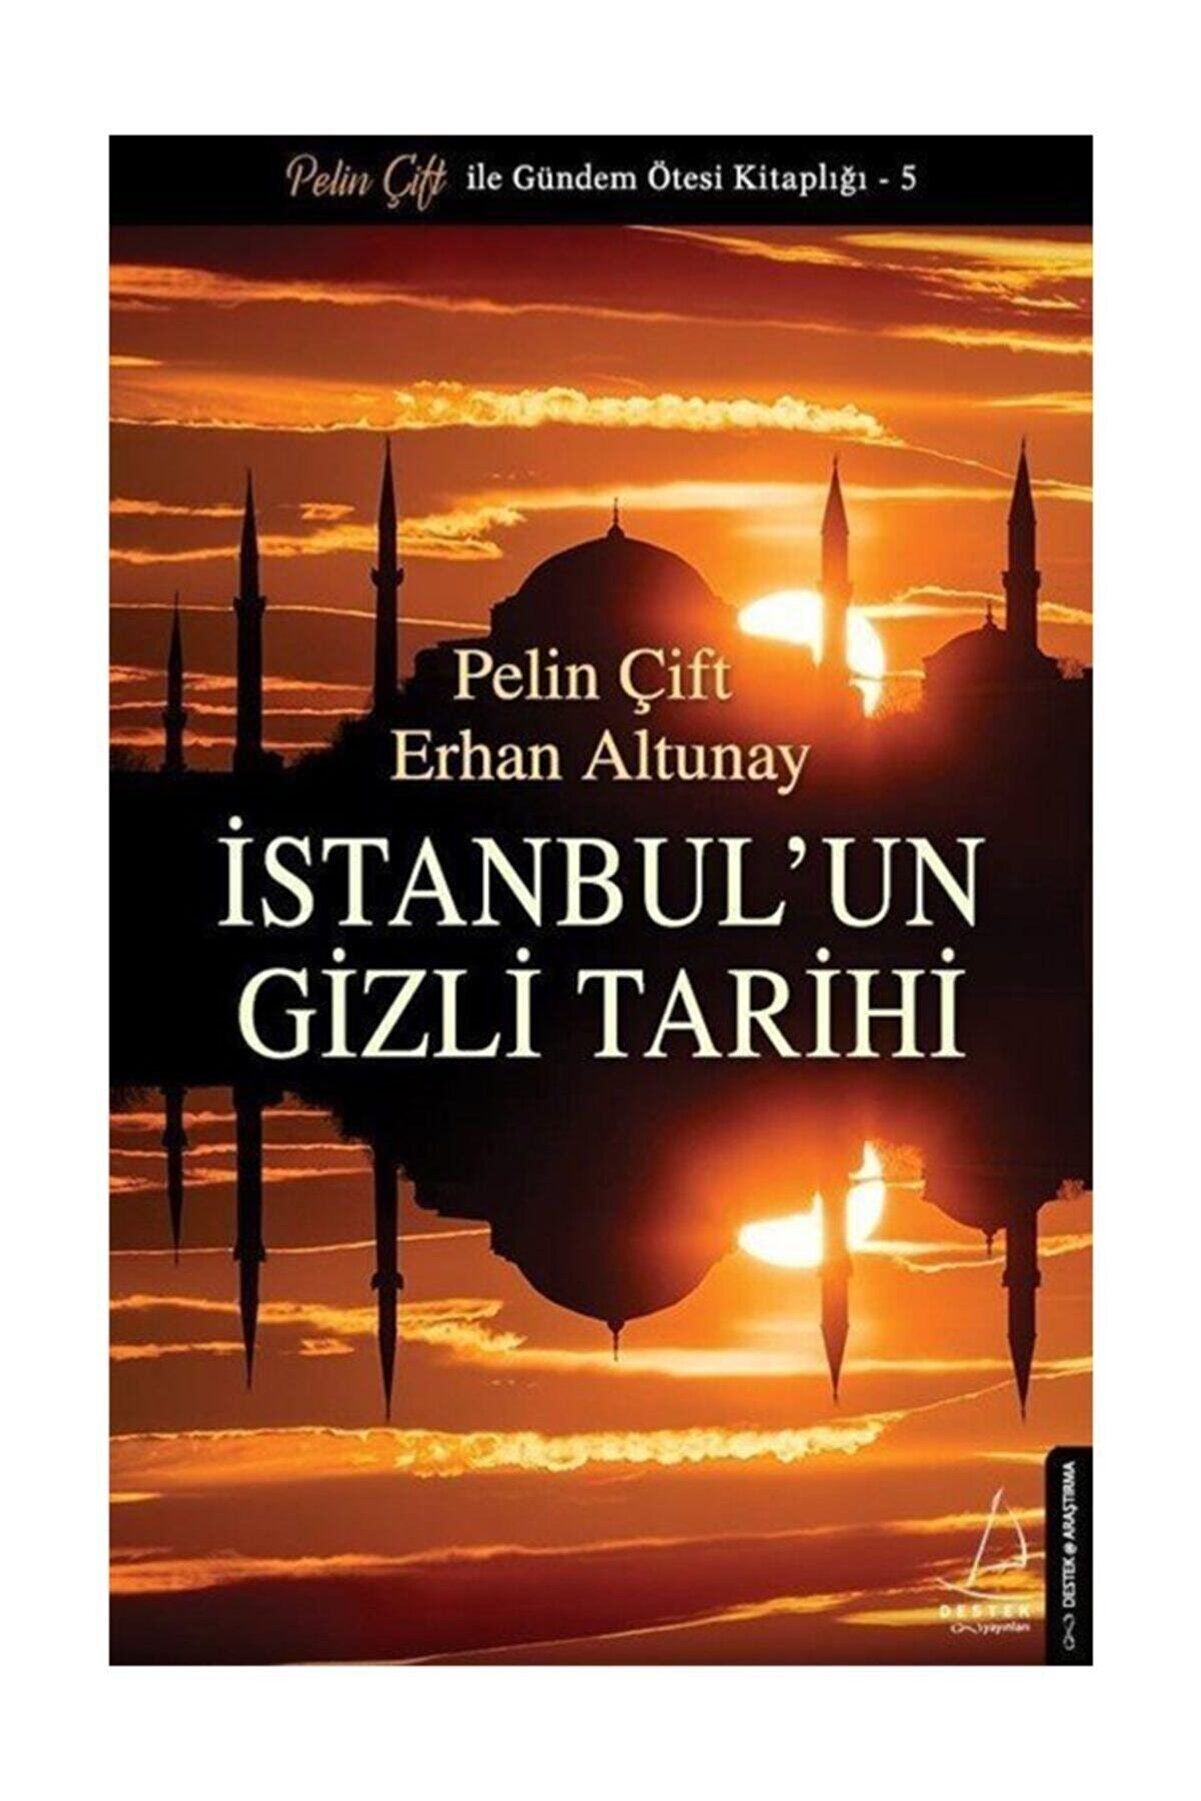 Destek Yayınları İstanbul'un Gizli Tarihi